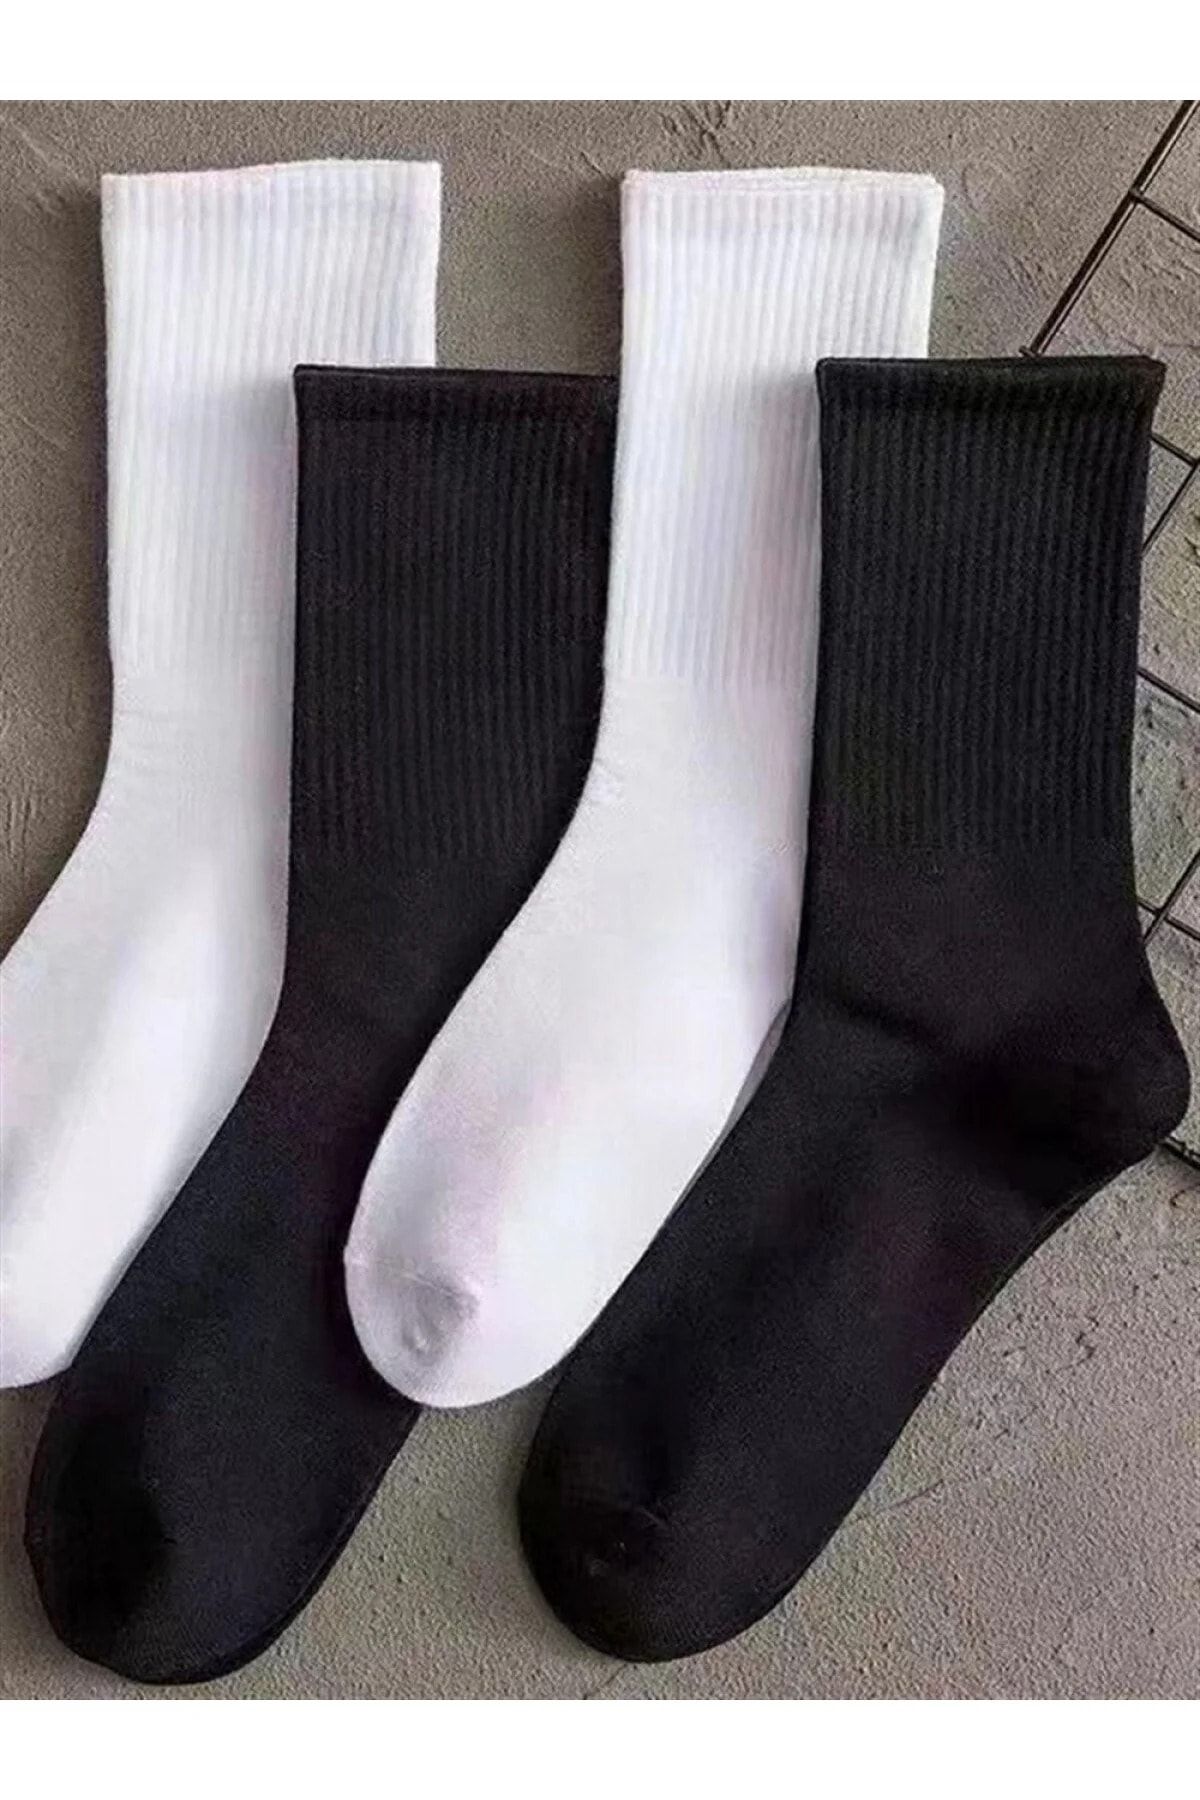 CFNY SOCKS 4 Çift Ekonomik Paket Erkek Kadın Unisex Soket Uzun Tenis Corap Siyah Beyaz Düz Kolej Çoraplar